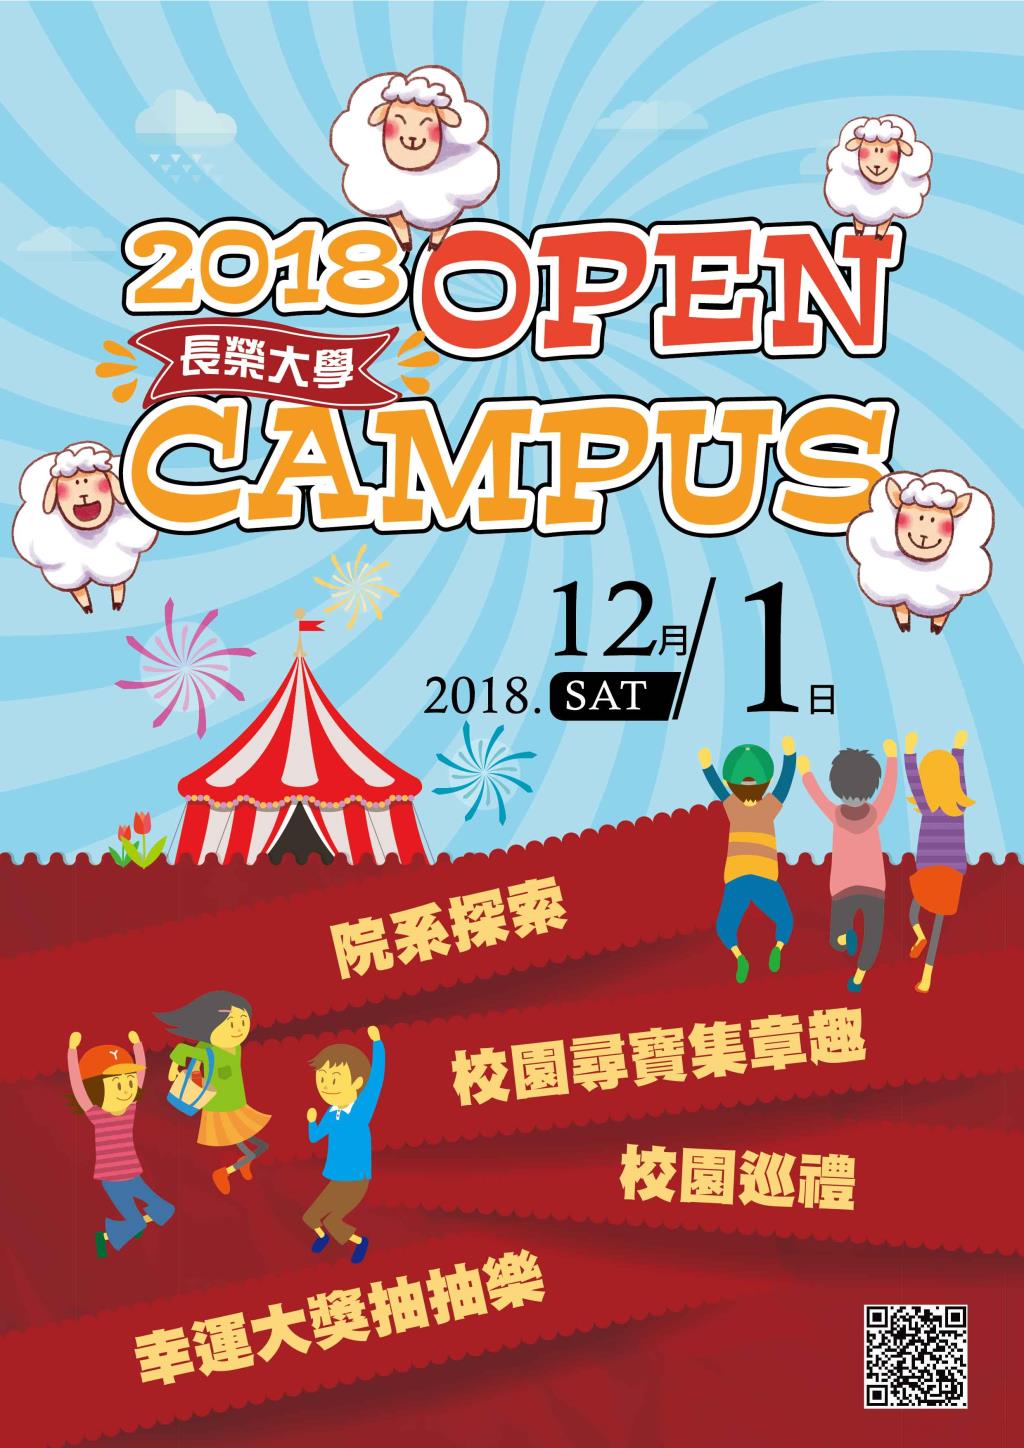 2018 Open Campus 校園開放日